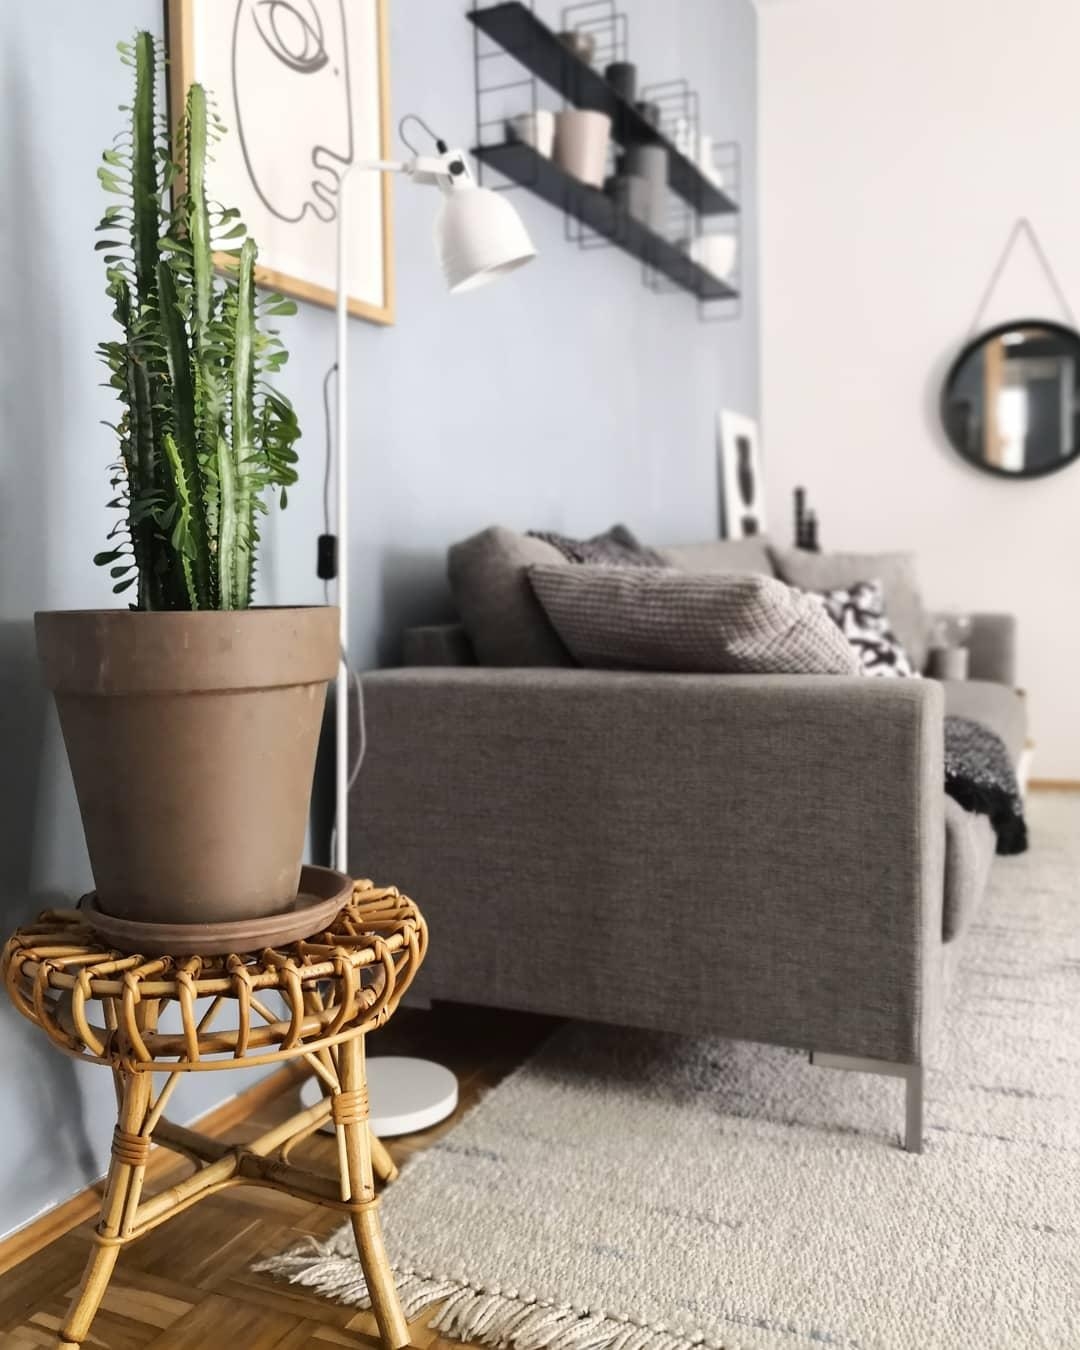 #kaktus #couch #wohnzimmerideen #livingroom #pflanzen #shelf 